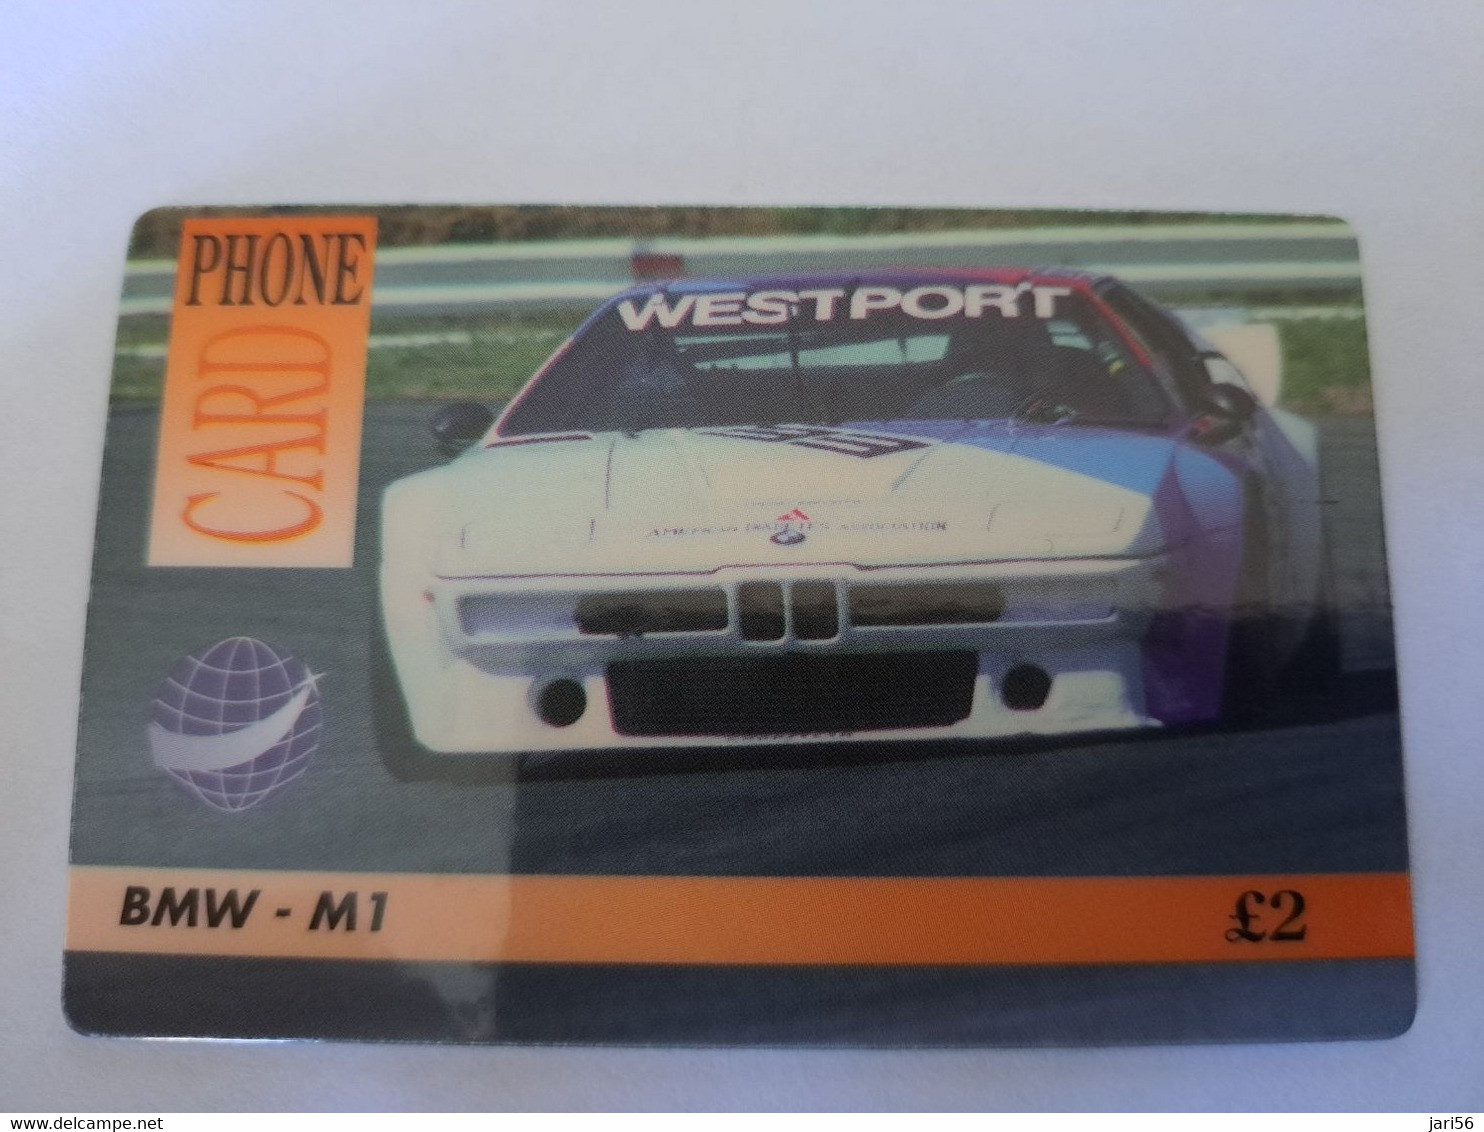 GREAT BRITAIN   2 POUND  /  BMW - M1  AUTO/CAR /RACE  /    DIT PHONECARD    PREPAID CARD      **12126** - Verzamelingen